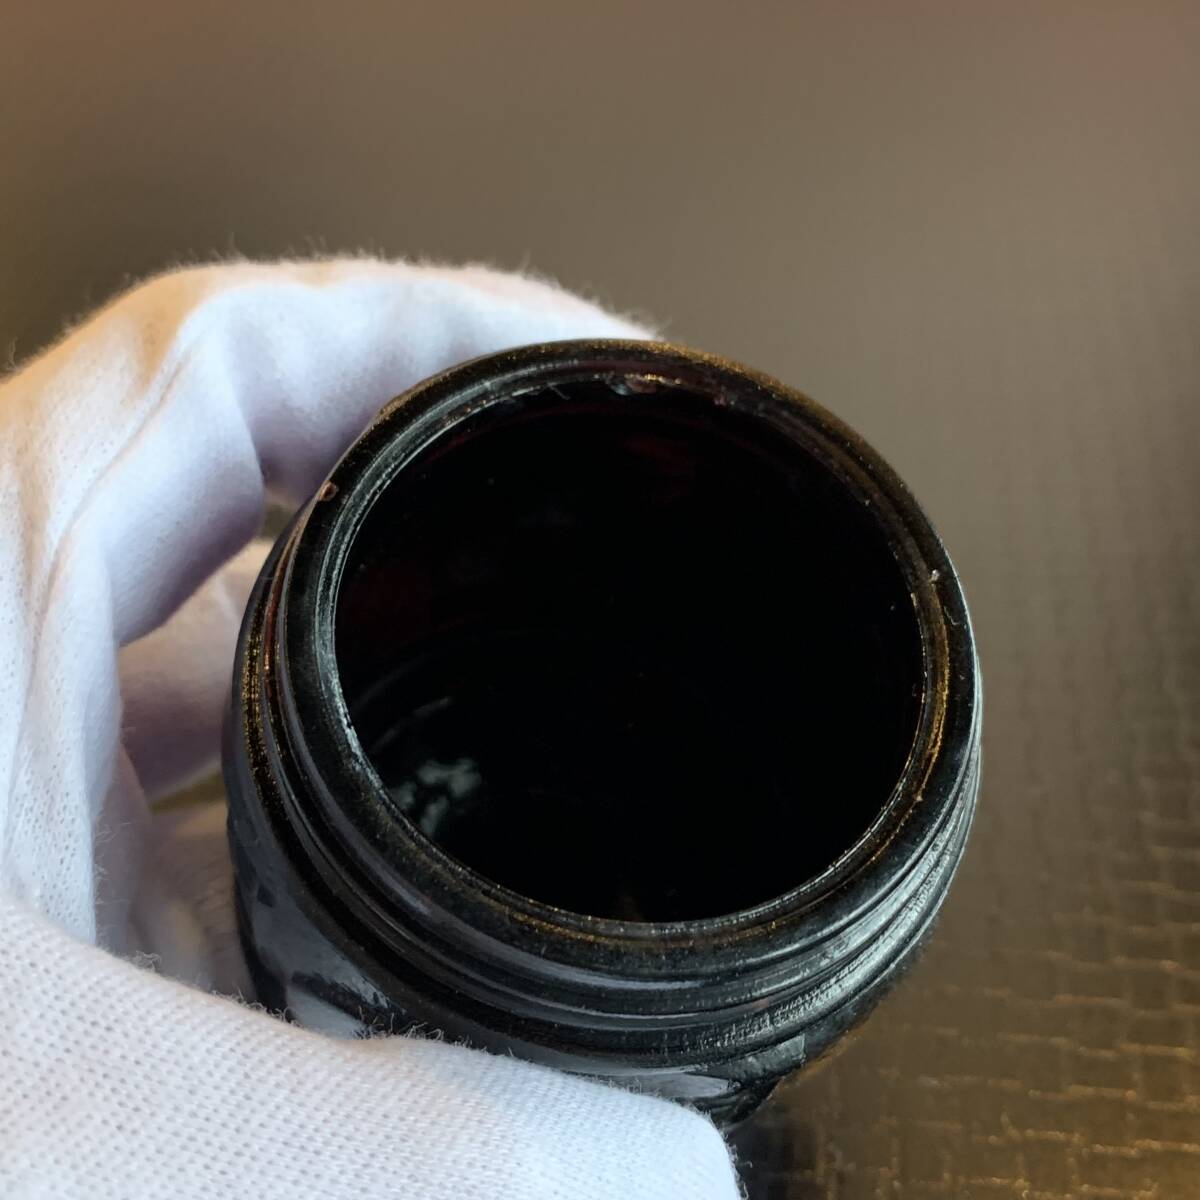 漆黒レートクレーム 検索用 レートクリーム クリーム ペロペロ ビー玉 おはじき あめや瓶 豆ランプの画像3